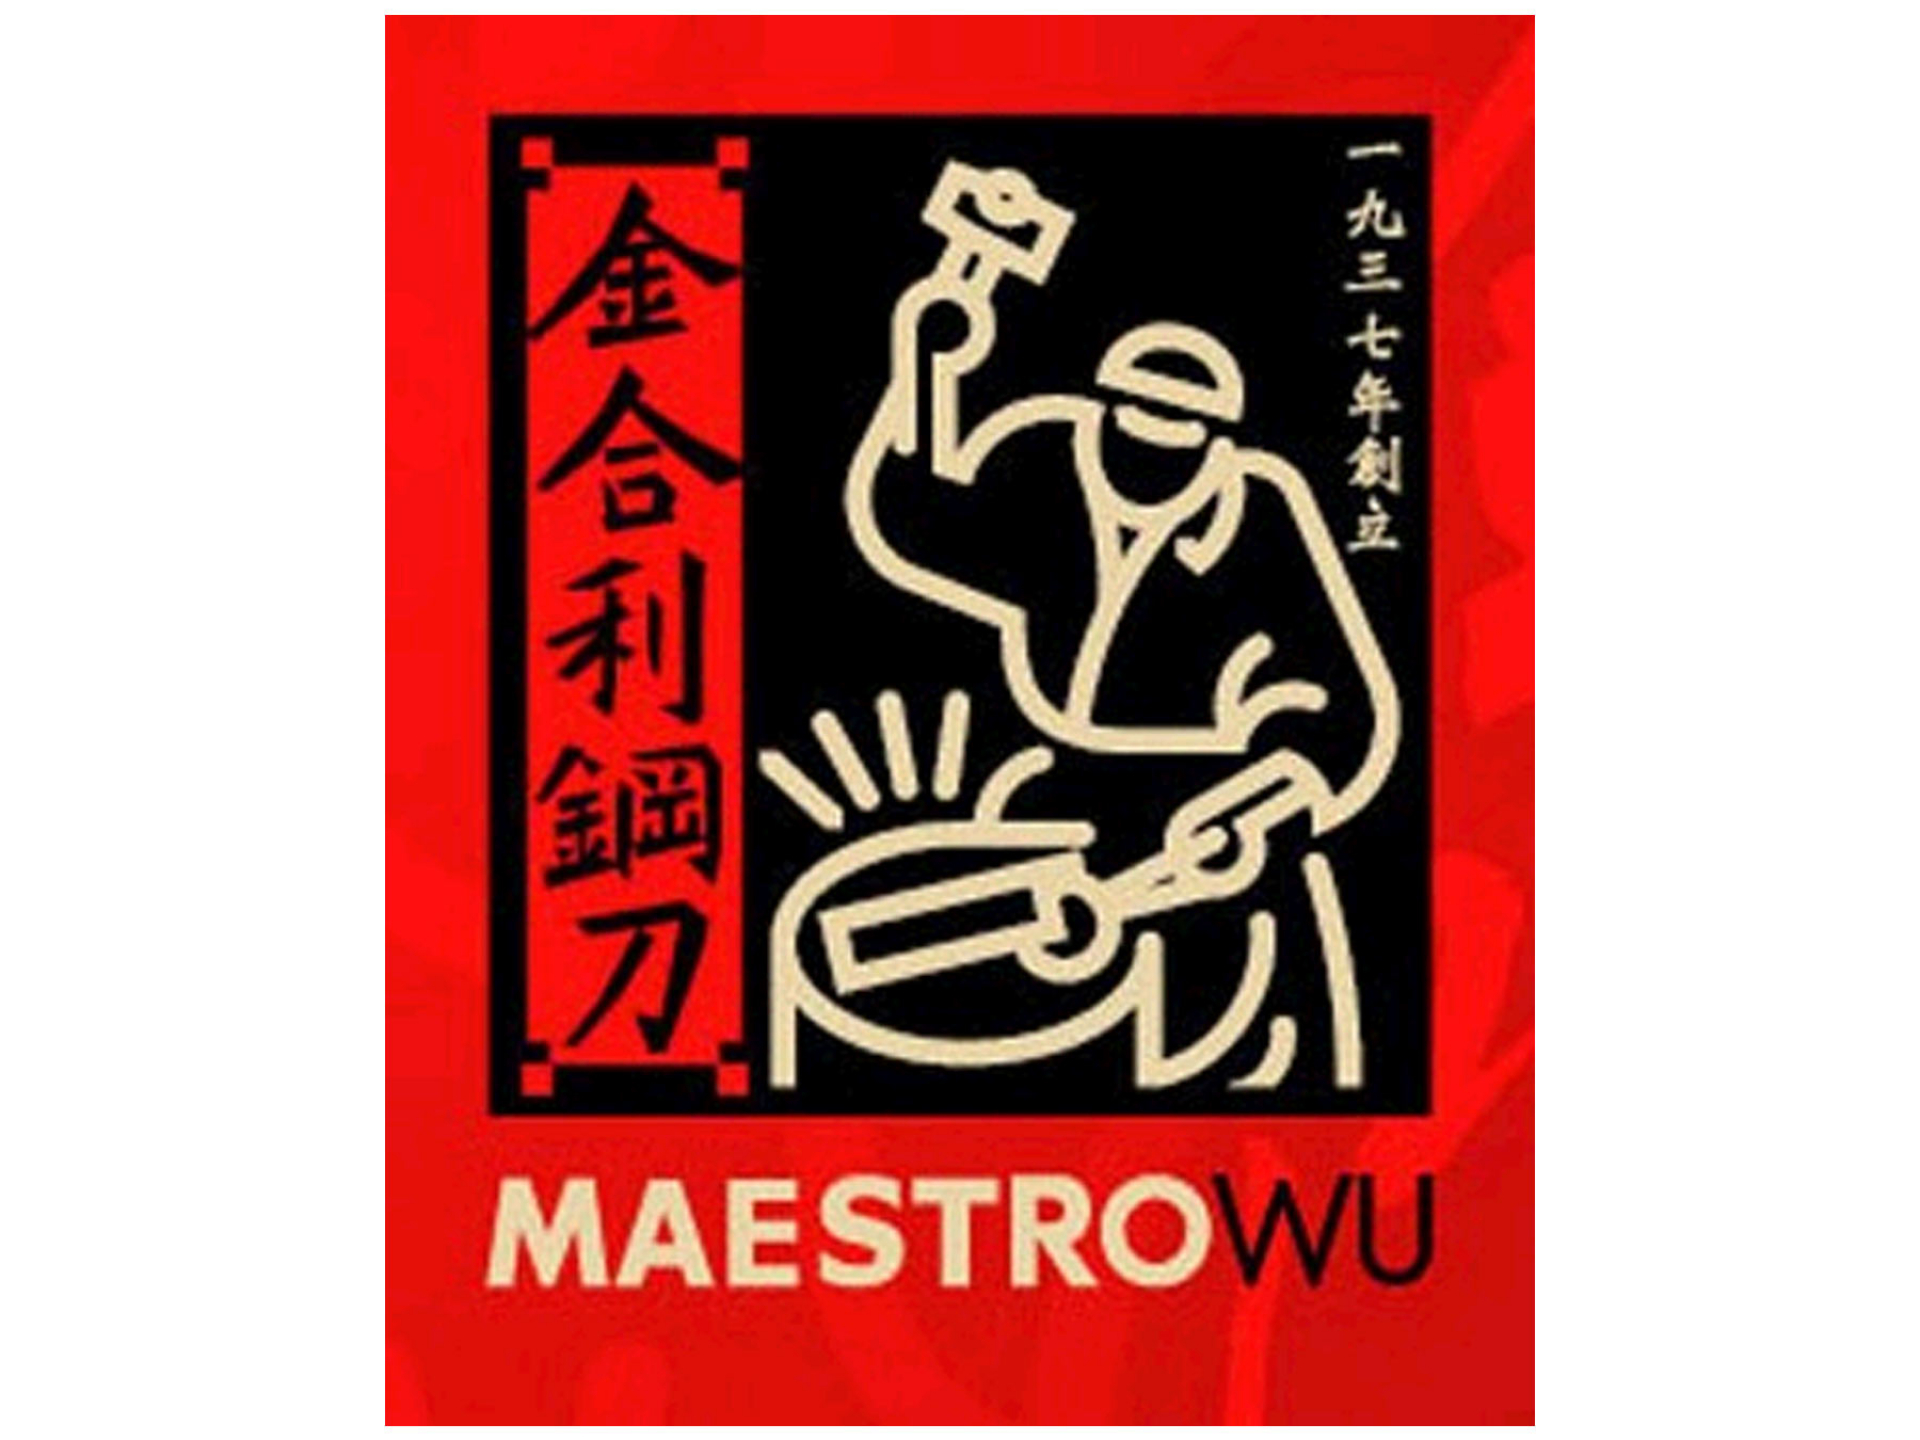 Maestro Wu D-10 Chinesisches Hackmesser / Slicer 17 cm